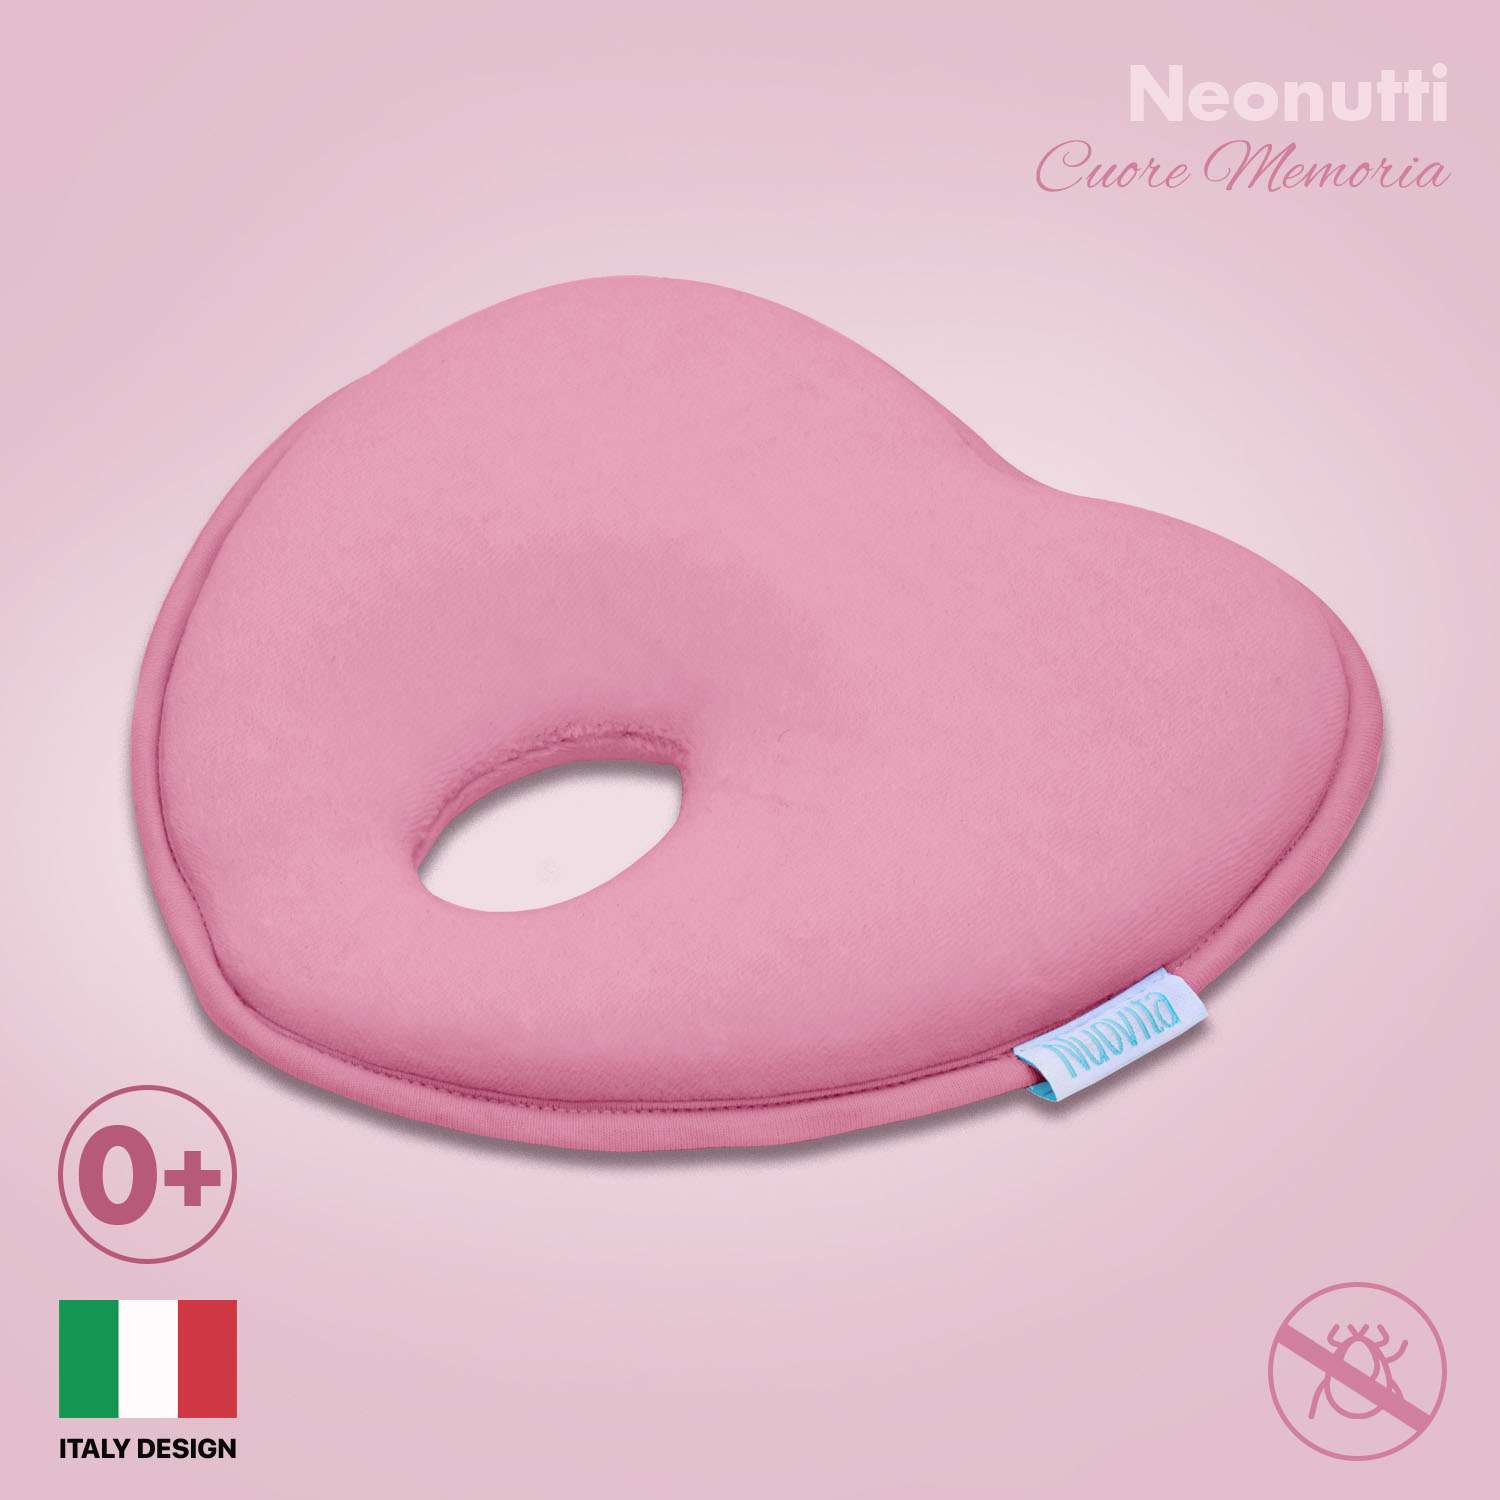 Подушка для новорожденного Nuovita NEONUTTI Cuore Memoria розовый - фото 2